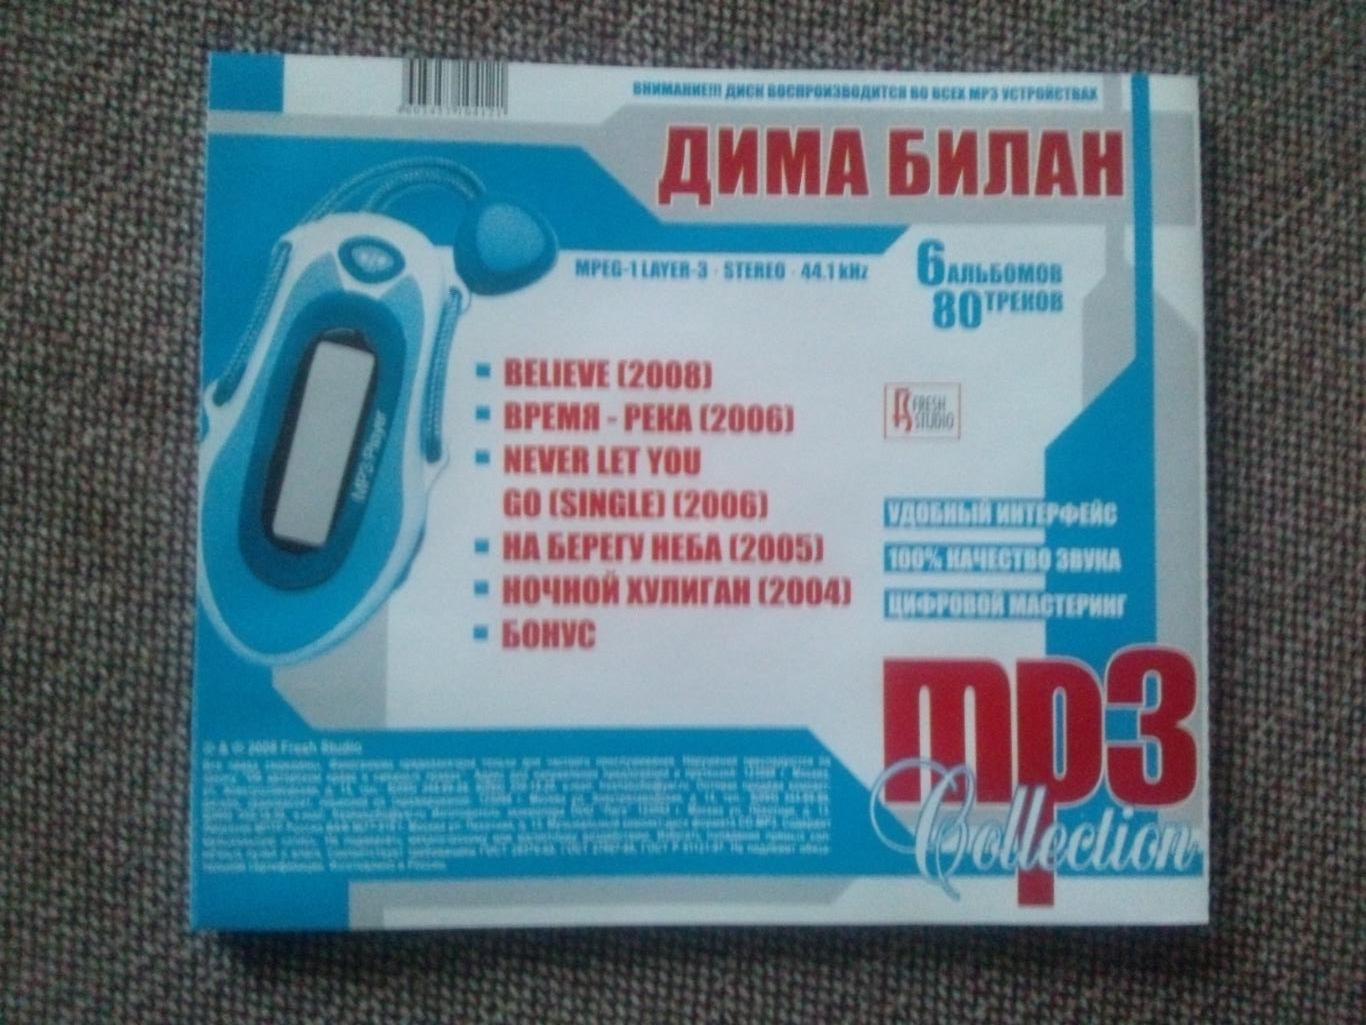 MP - 3 CD диск : Дима Билан 2004 - 2008 гг. (5 альбомов) Российская поп - музыка 7